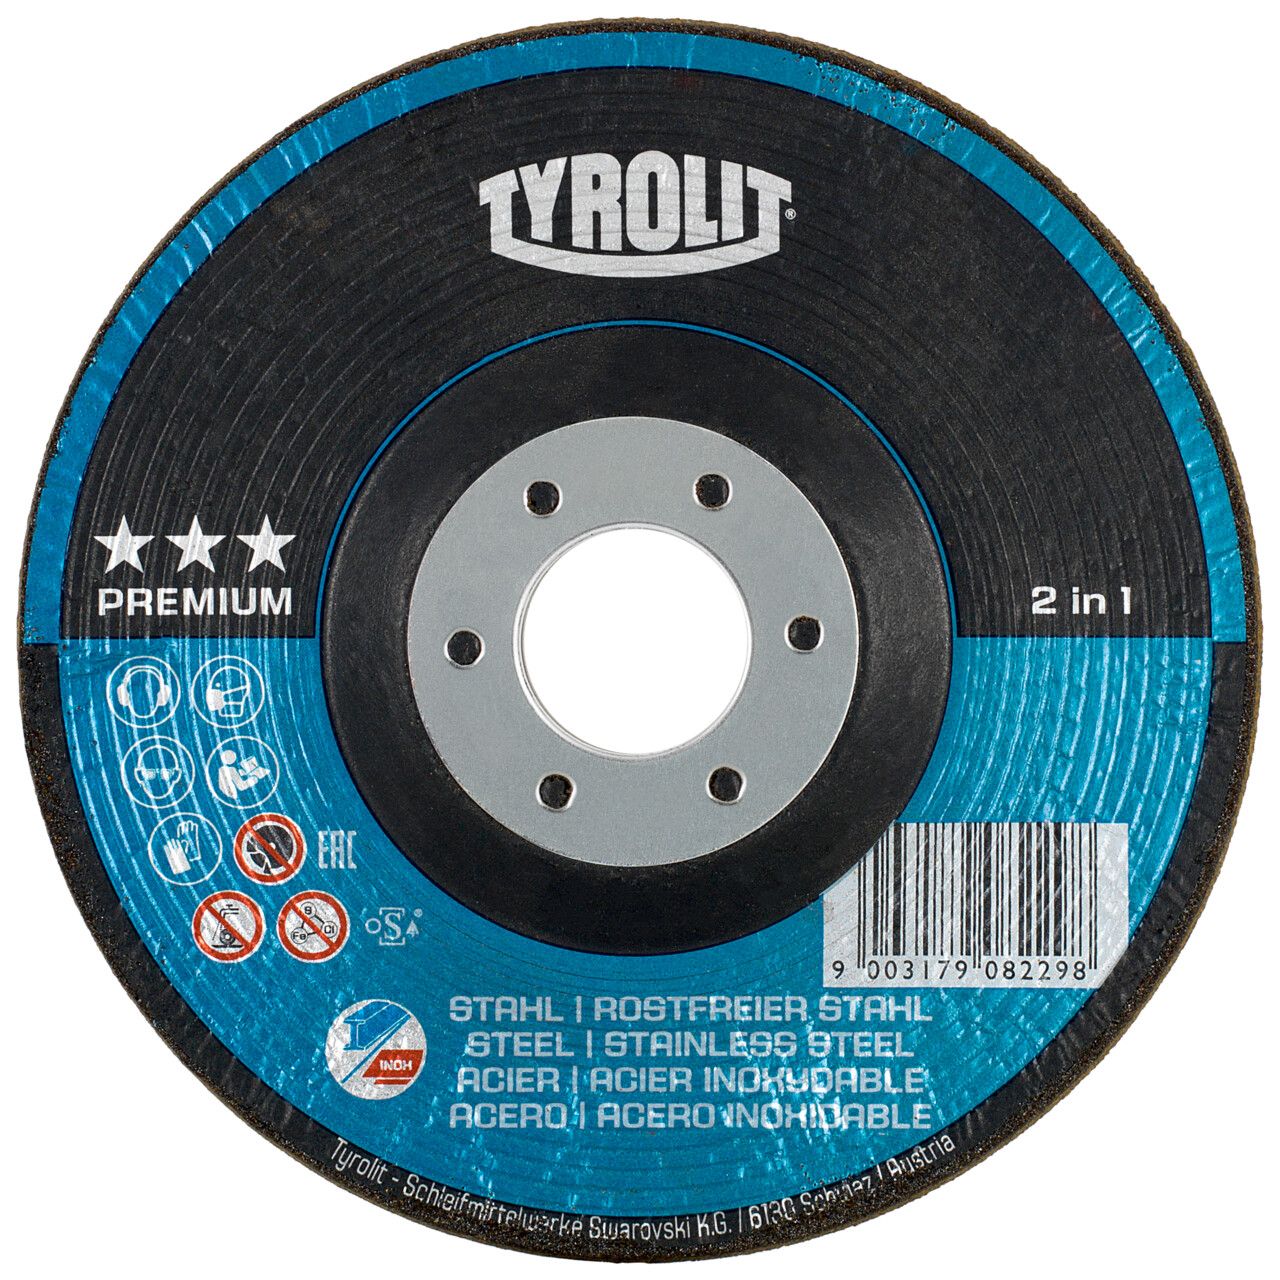 Tyrolit 2in1 RONDELLER® para acero y acero inoxidable 115 #29RON 115x22,23 A24Q-BF